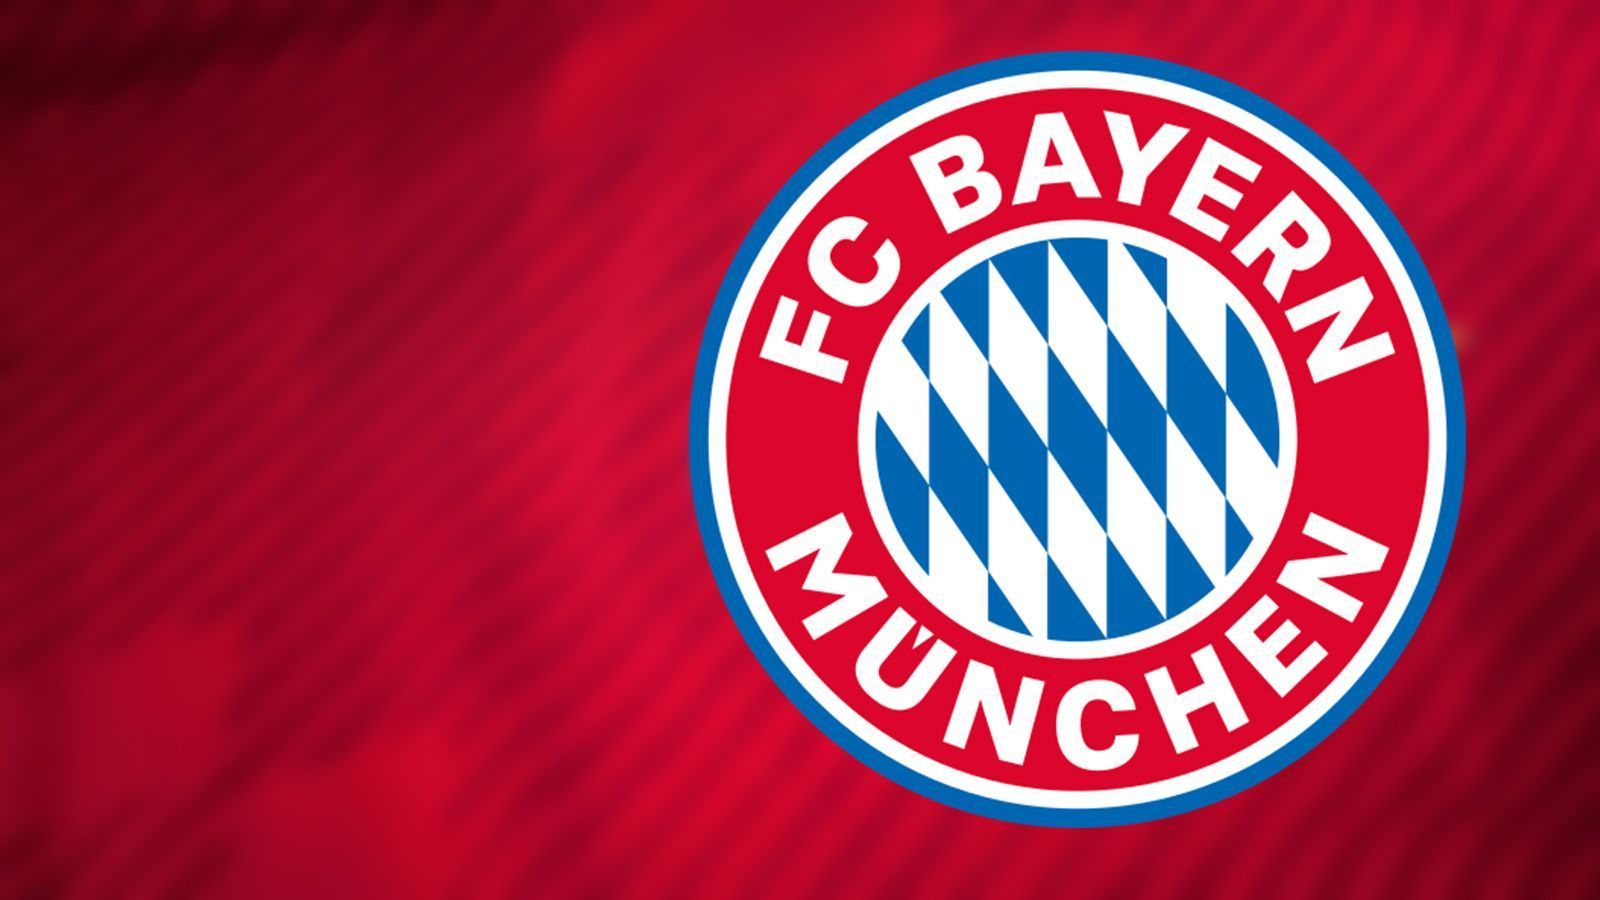 
                <strong>FC Bayern ohne eigene eSports-Abetilung</strong><br>
                Der Rekordmeister hat sich in den vergangenen Jahren innerhalb des Vereins öfter mit dem Thema auseinandergesetzt. Das Zwischenfazit: Bislang gibt es noch keinen großen Einstieg des FC Bayern im eSports.
              